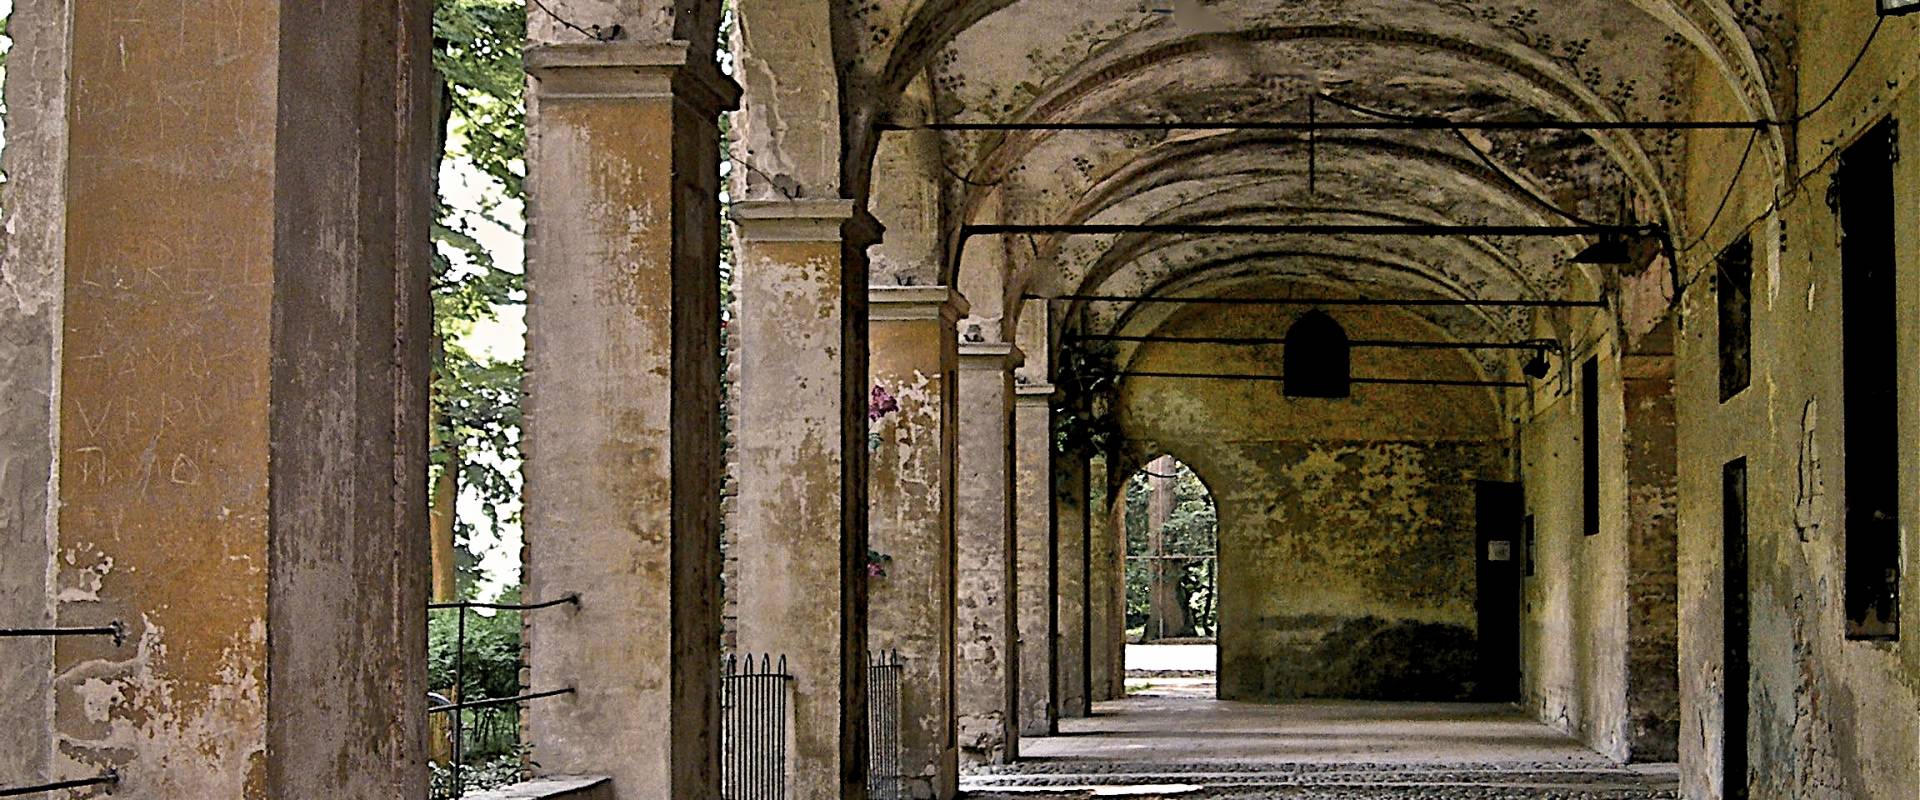 Rocca di San Secondo Parmense - Porticato nel cortile interno foto di Caba2011